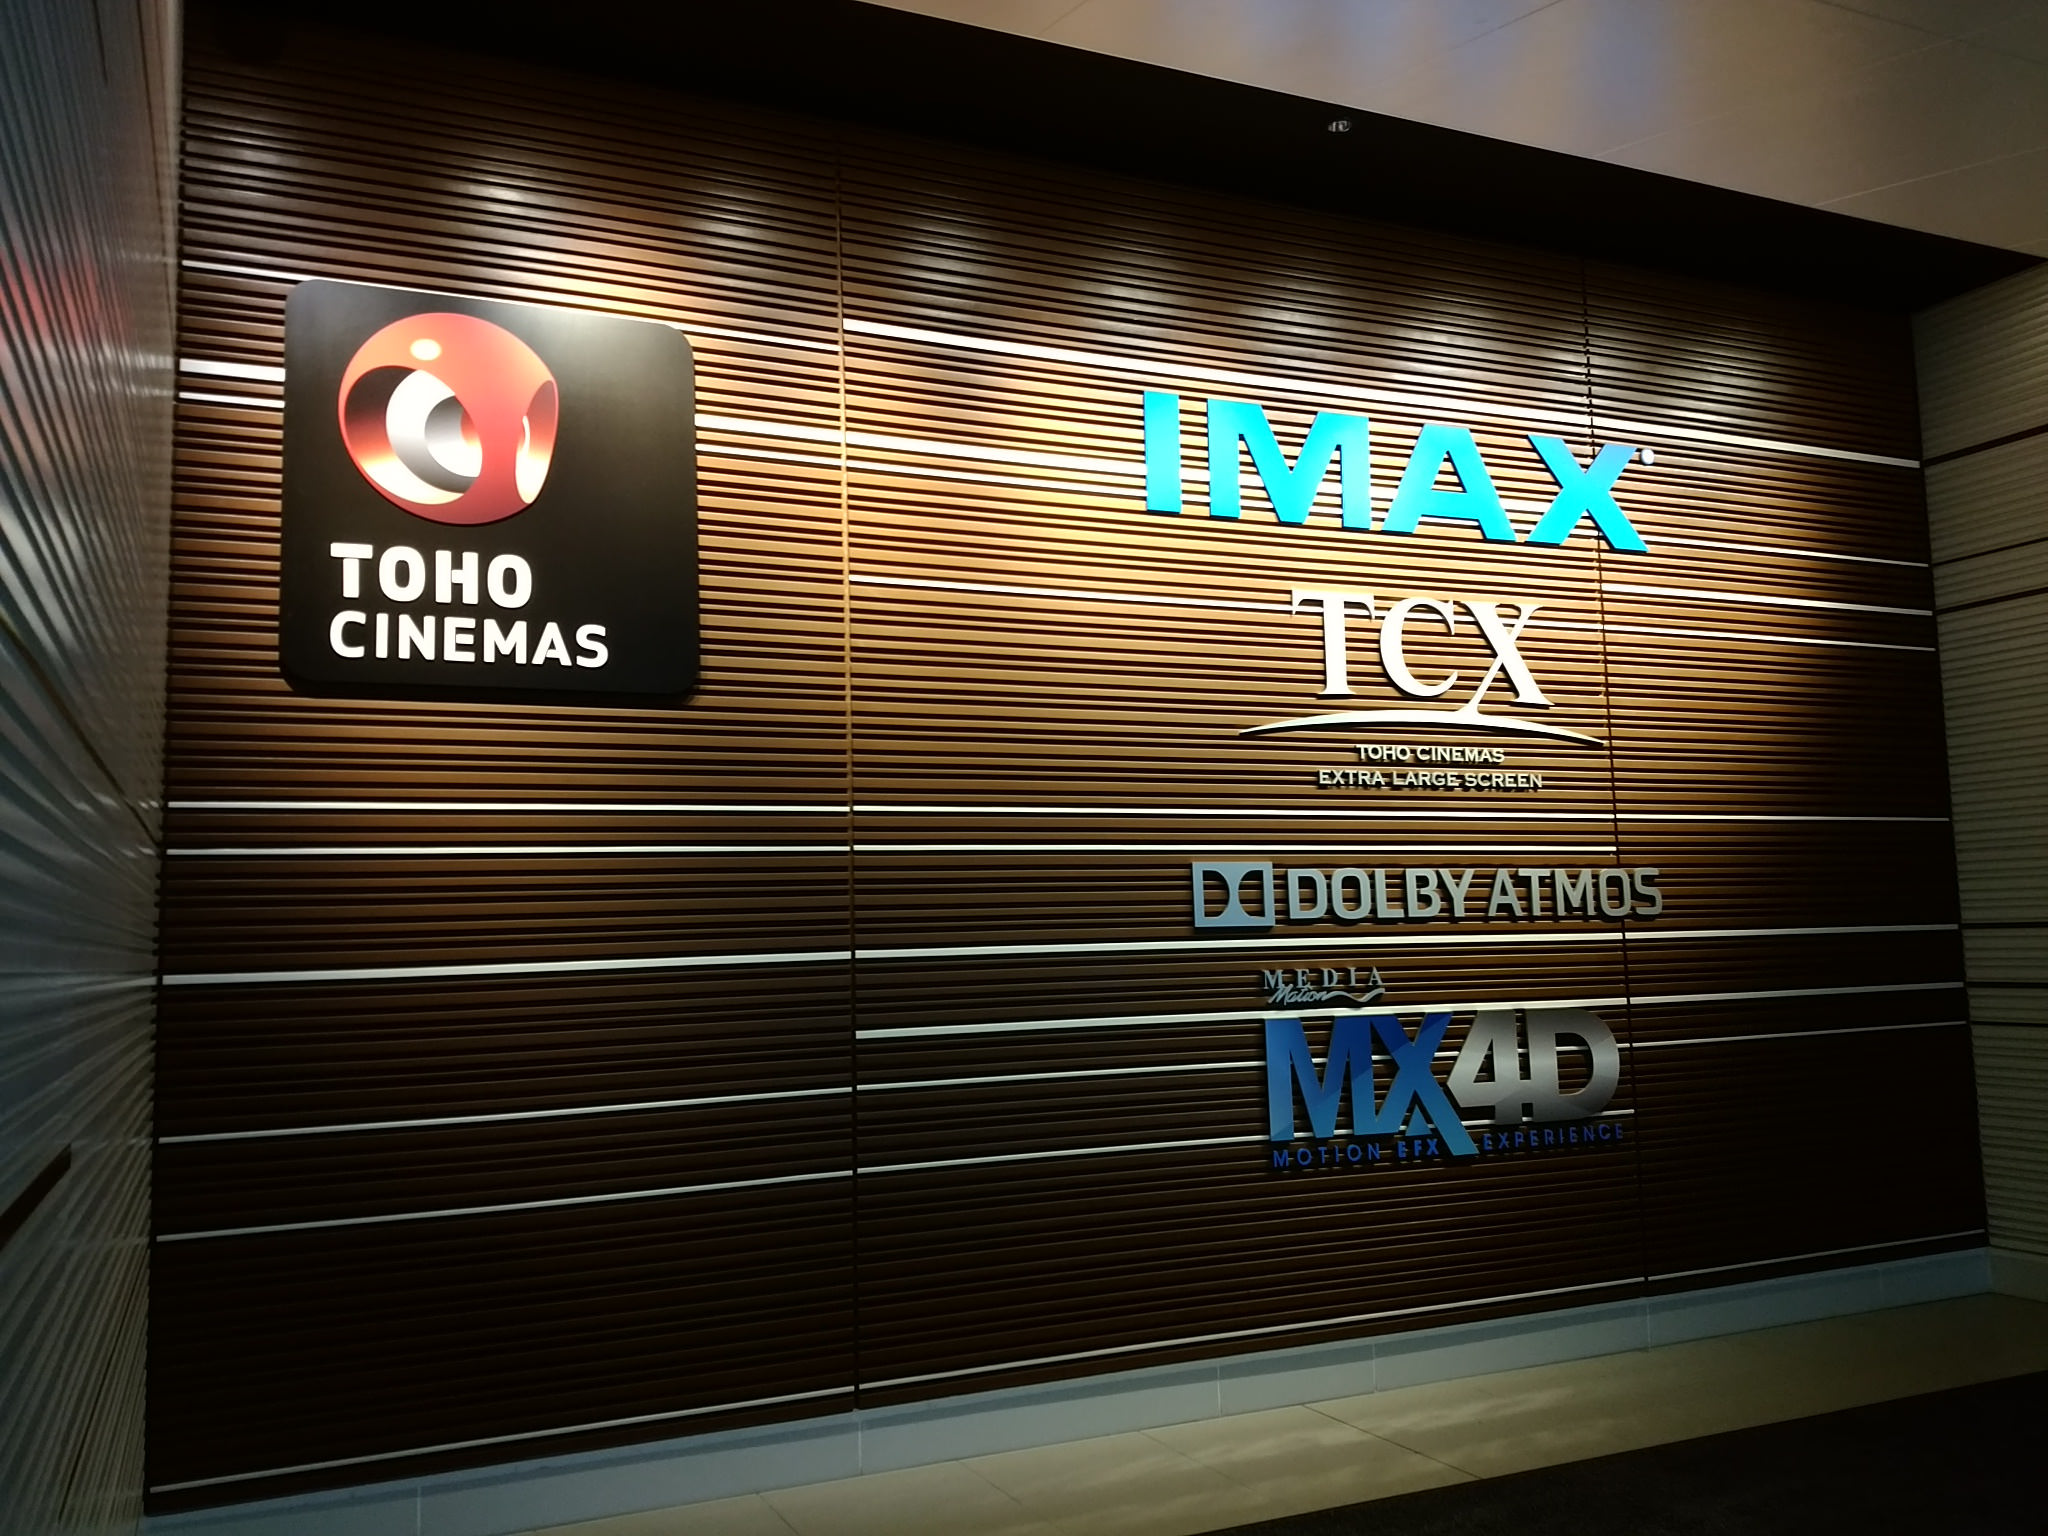 Tohoシネマズの映画料金を割引する方法 最大700円割引 全国のレジャー施設で使える割引チケット クーポン情報